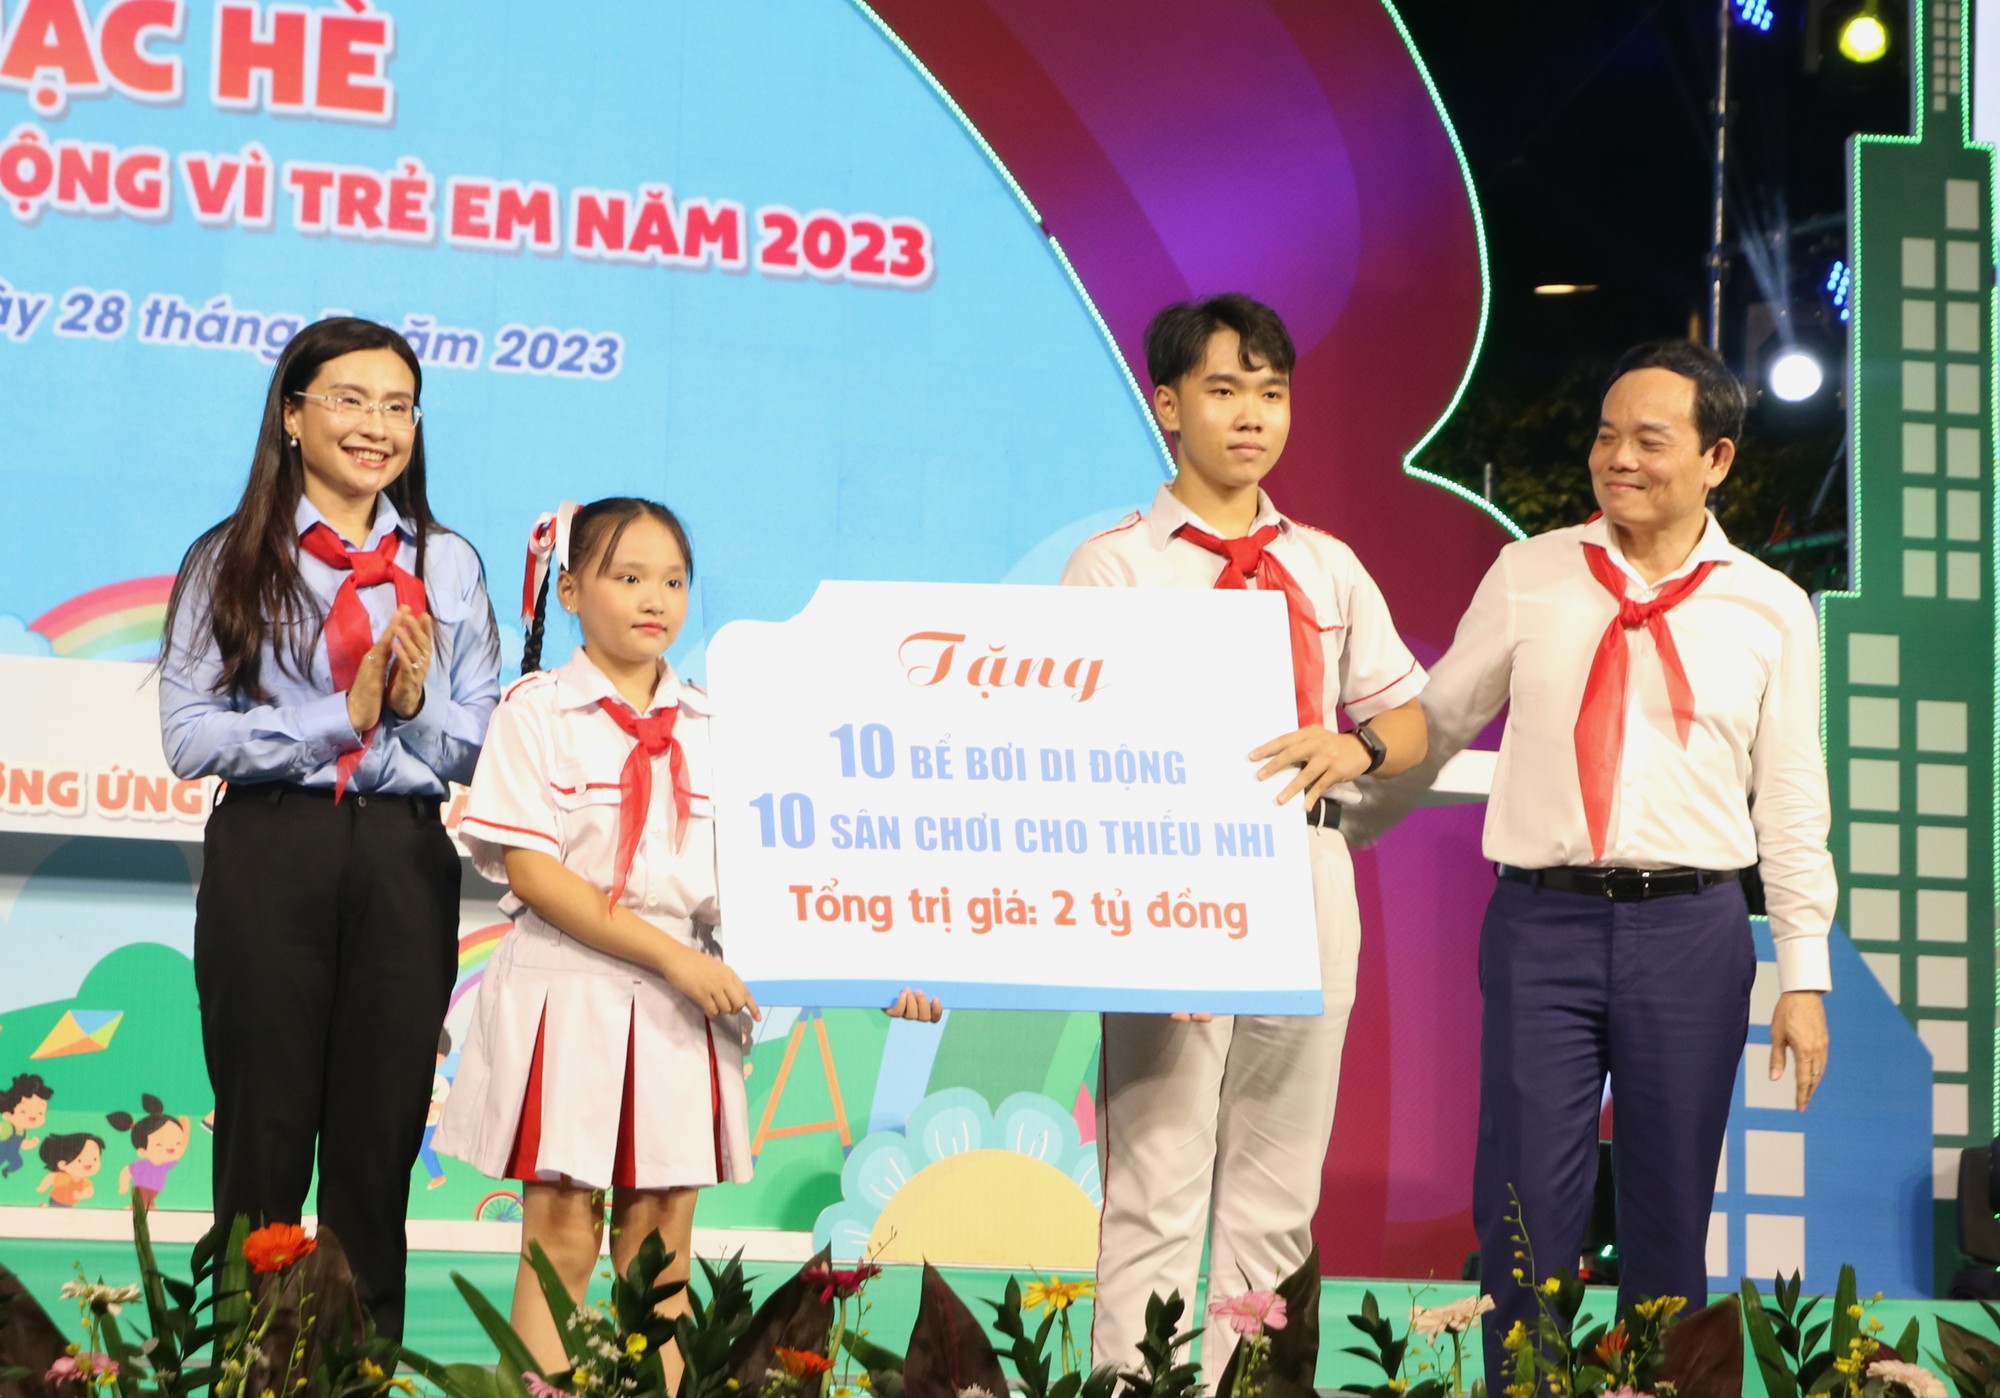 Phố đi bộ Nguyễn Huệ sôi động với chuỗi sự kiện Khai mạc hè 2023 - Ảnh 3.